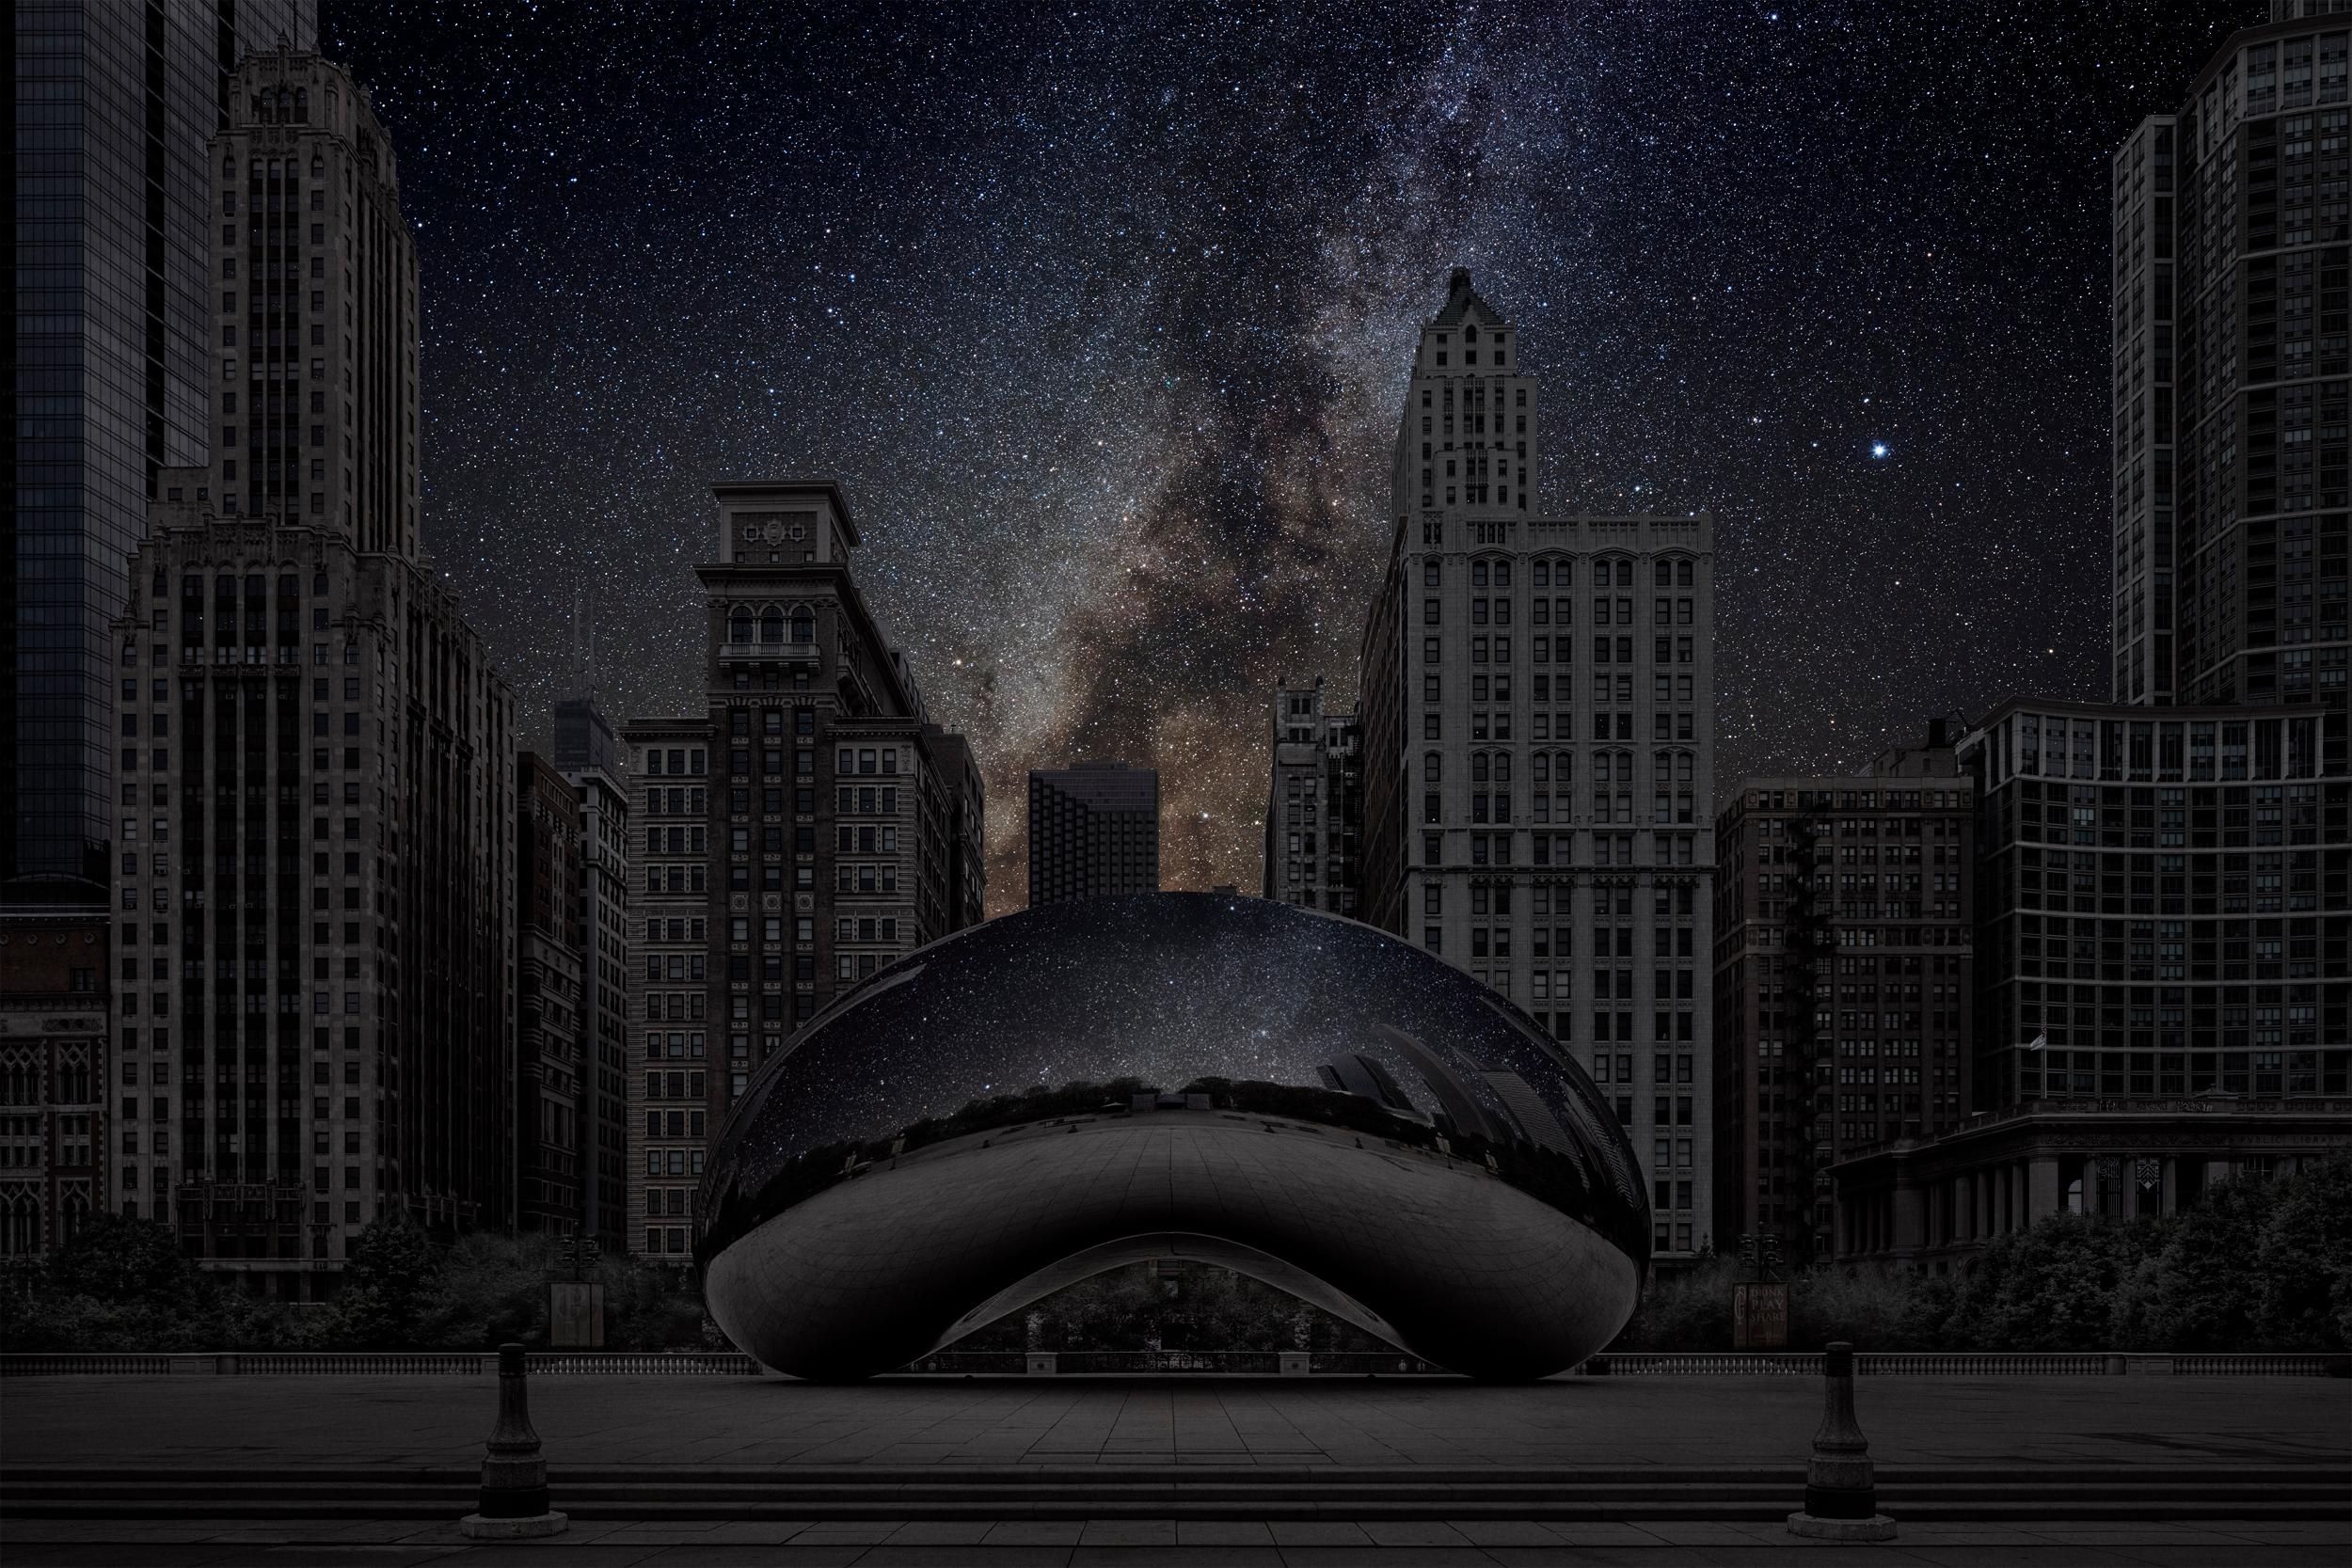 Thierry Cohen Landscape Photograph - Chicago 41 ̊ 52’ 57” N 2015-09-17 LST 0:05